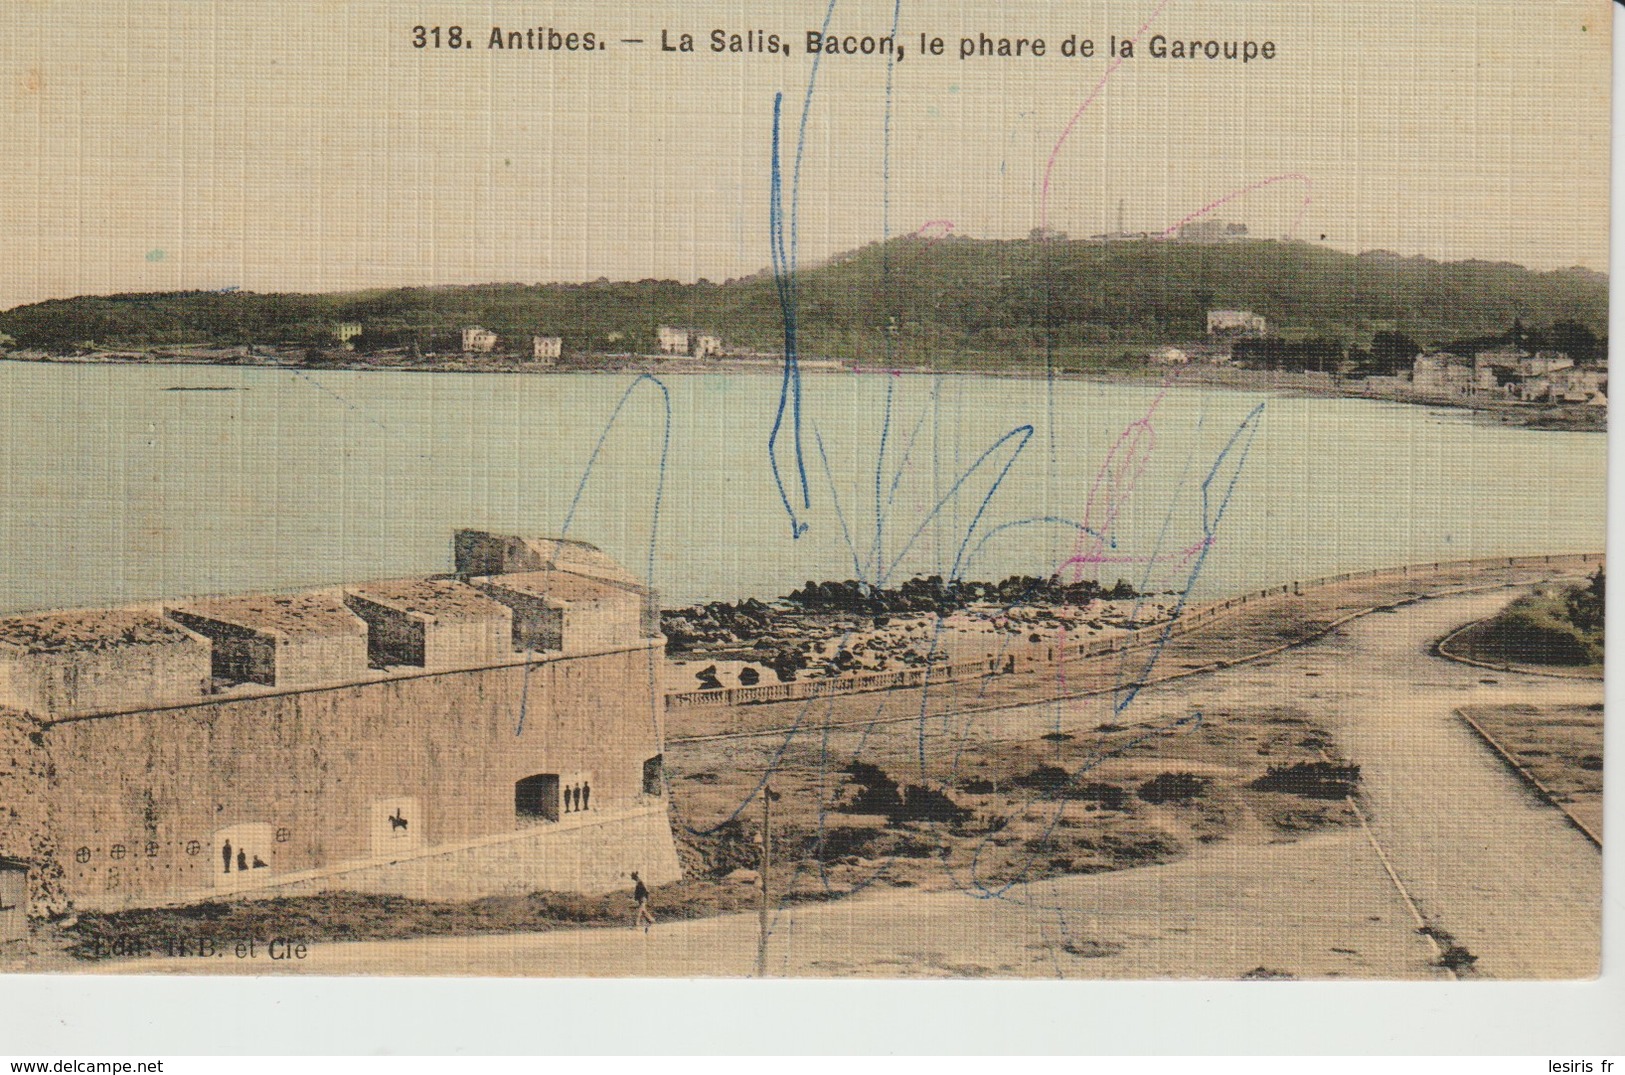 C.P.A. - ANTIBES - LA SALIS - BACON - LE PHARE DE LA GAROUPE - 318 - H. B. - Antibes - Old Town